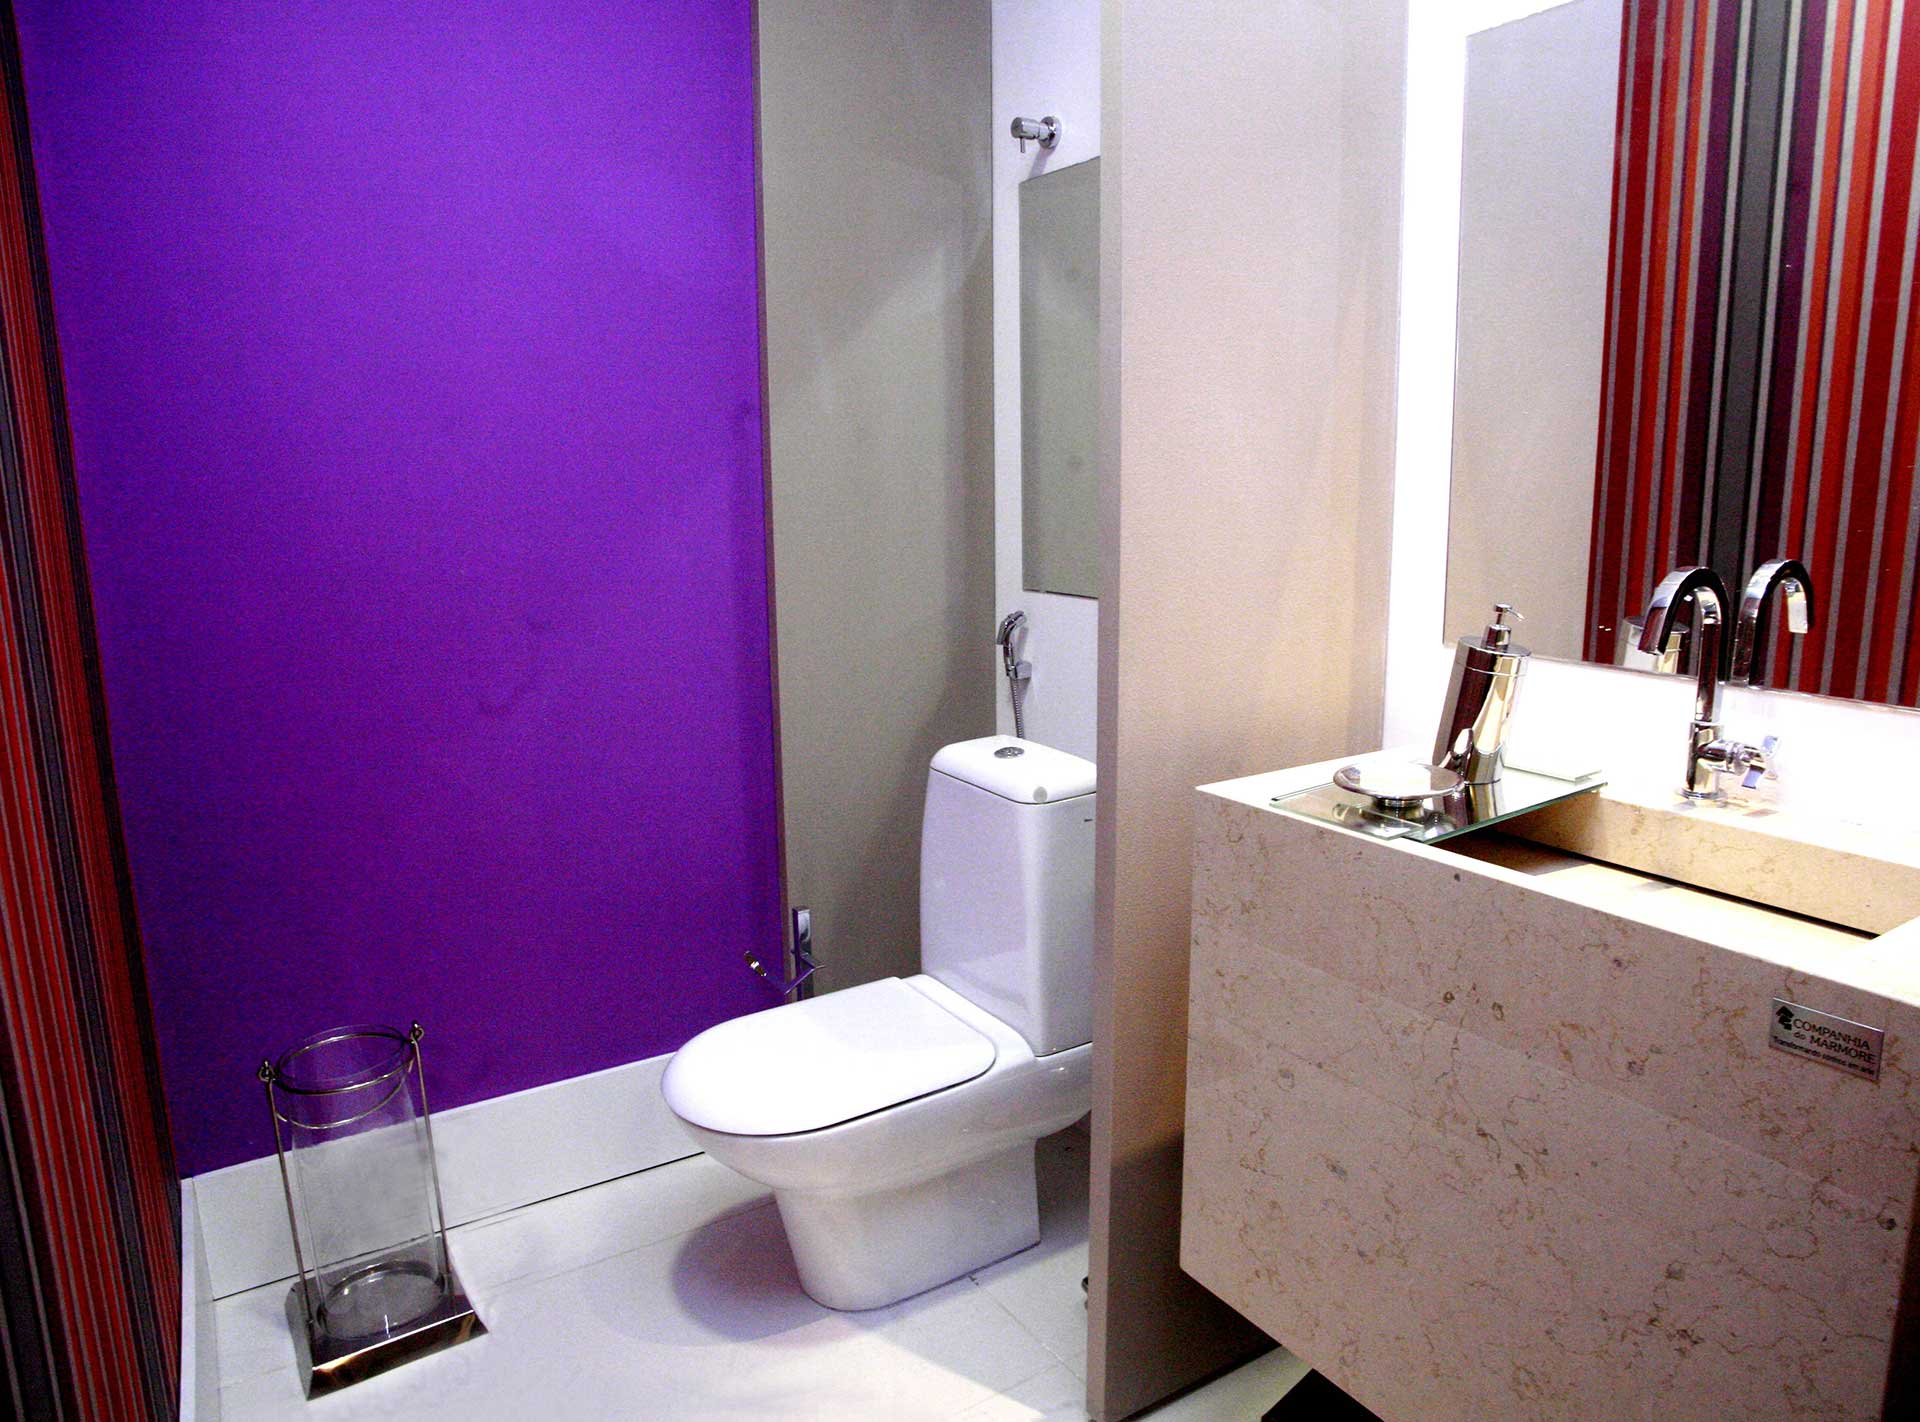 Toilettes de l'appartement de la tour Genève au Brésil. Réalisation ID Interior Design, par Anne-Laure Ferry-Adam, architecte d'intérieur à Genève.